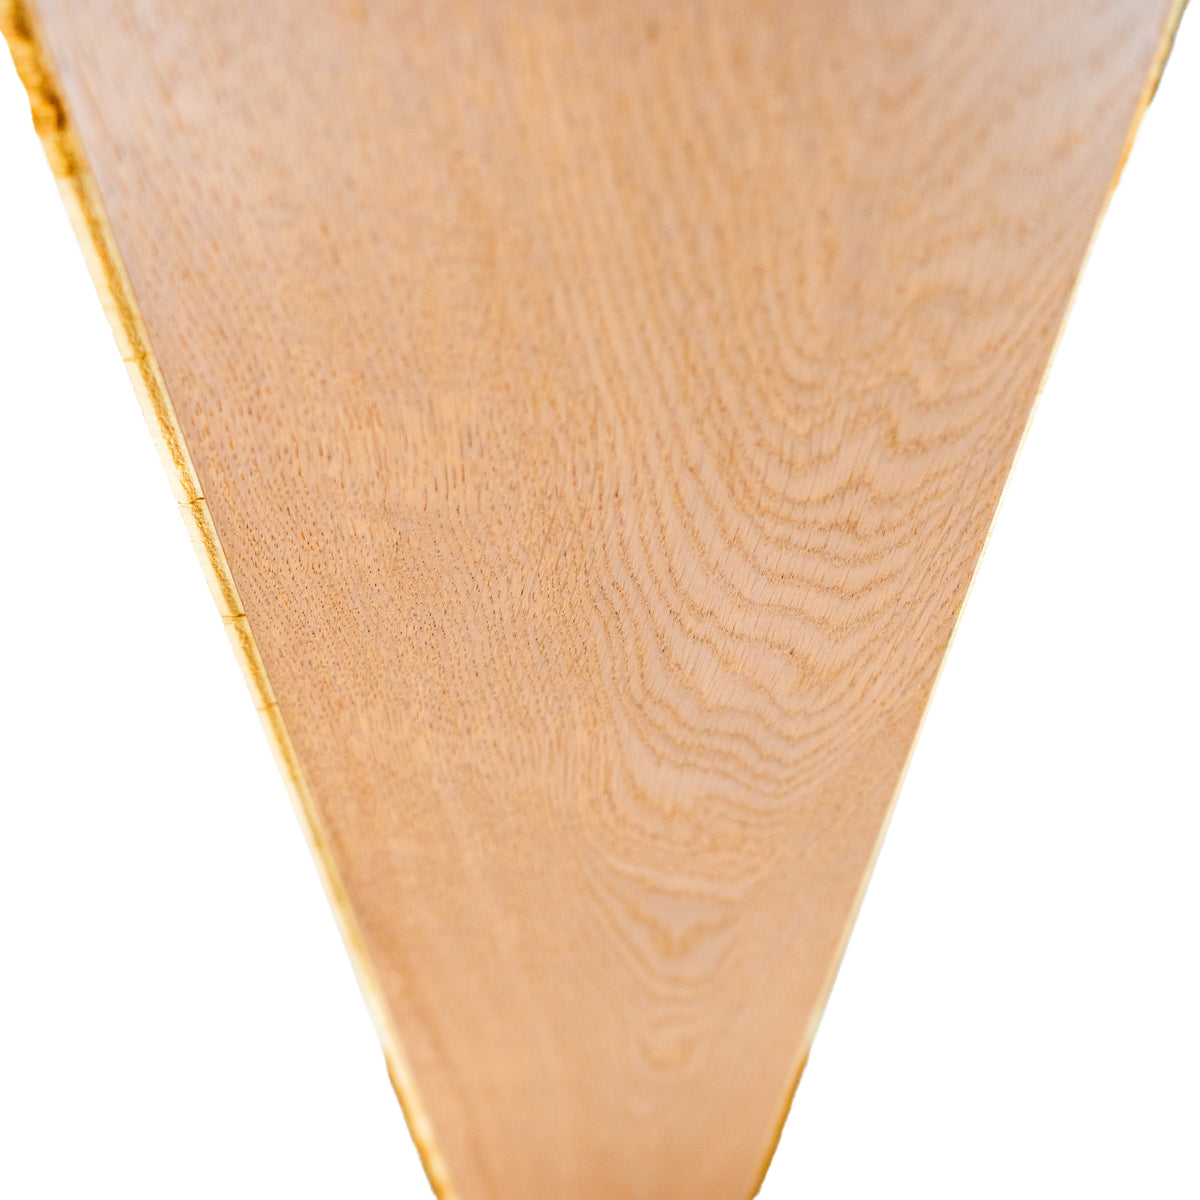 5.87" x 74.75" Tuscany White Oak Wood Flooring